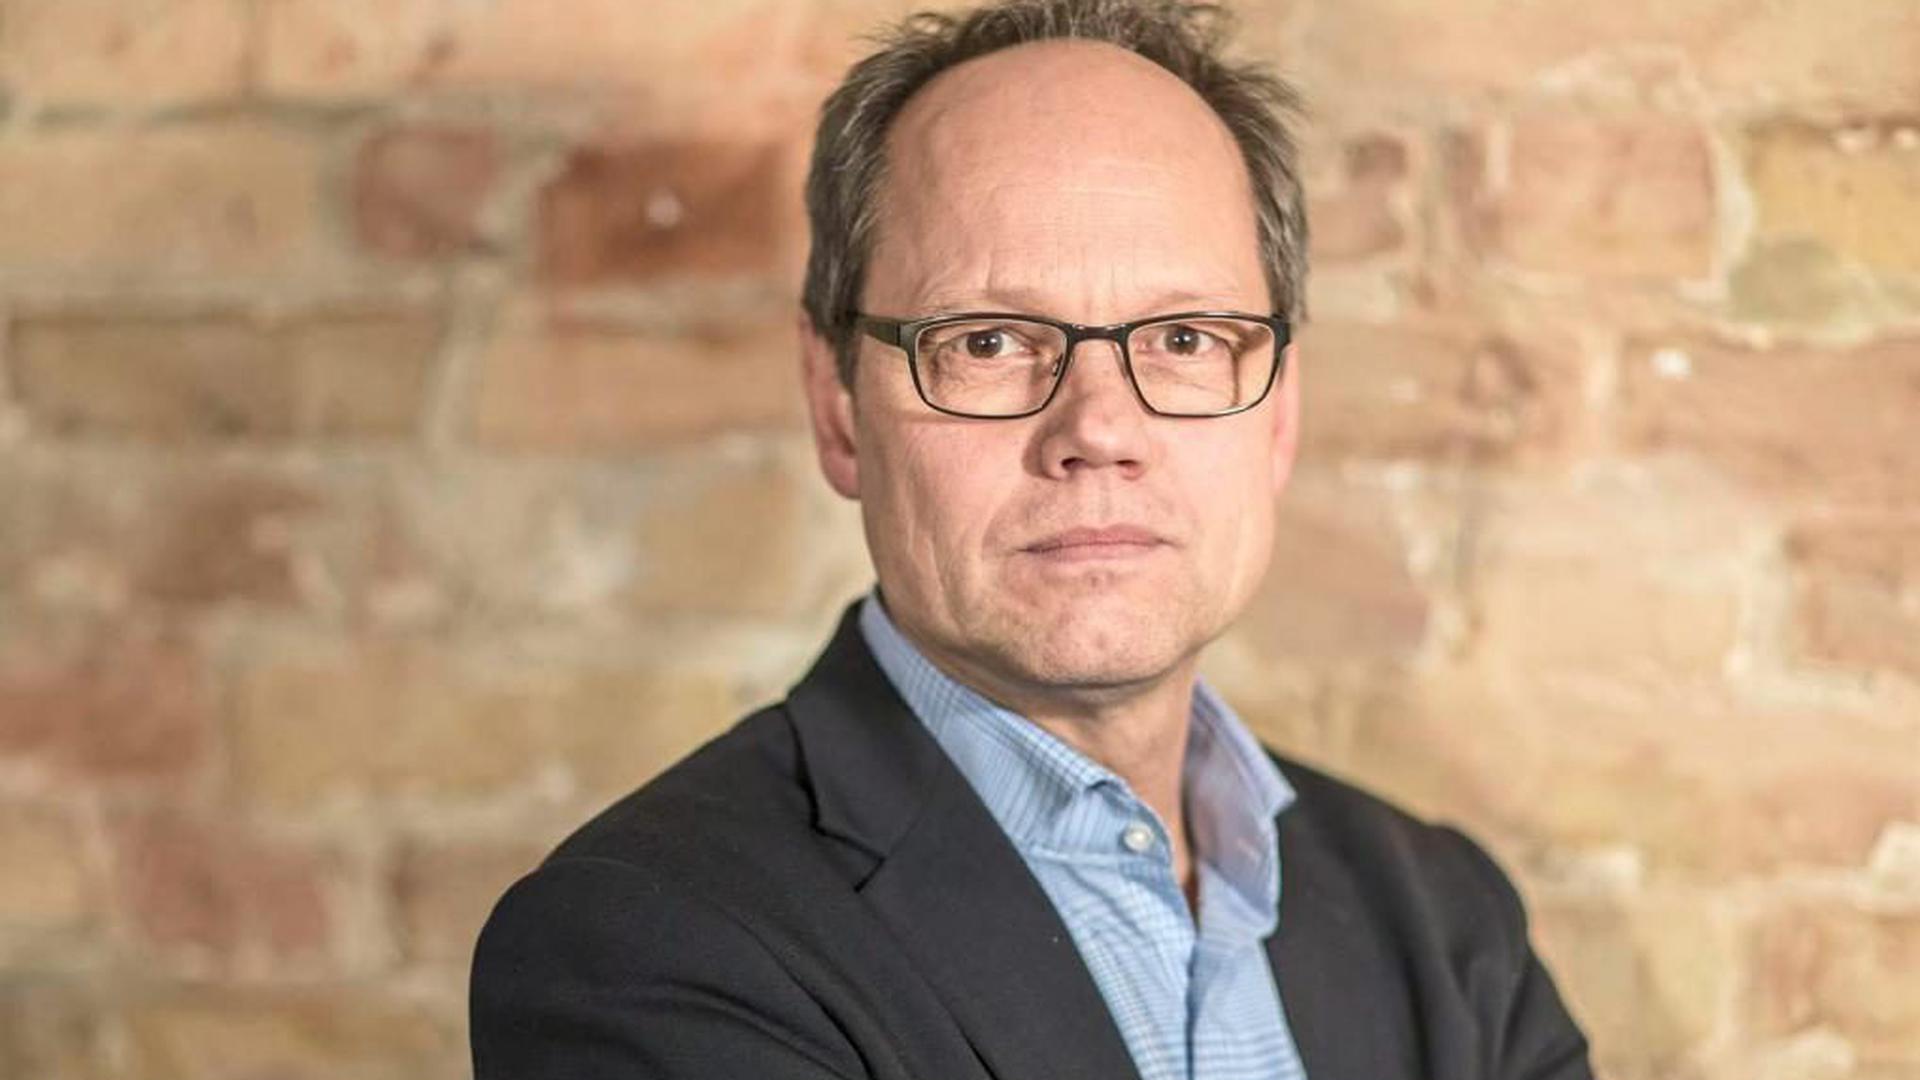 Will einiges anpacken: Kai Gniffke ist neuer Intendant des Südwestrundfunks. Am Freitag, 13. September, wird der bisherige Chefredakteur von ARD aktuell im Stuttgarter Funkhaus offiziell in sein Amt eingeführt.